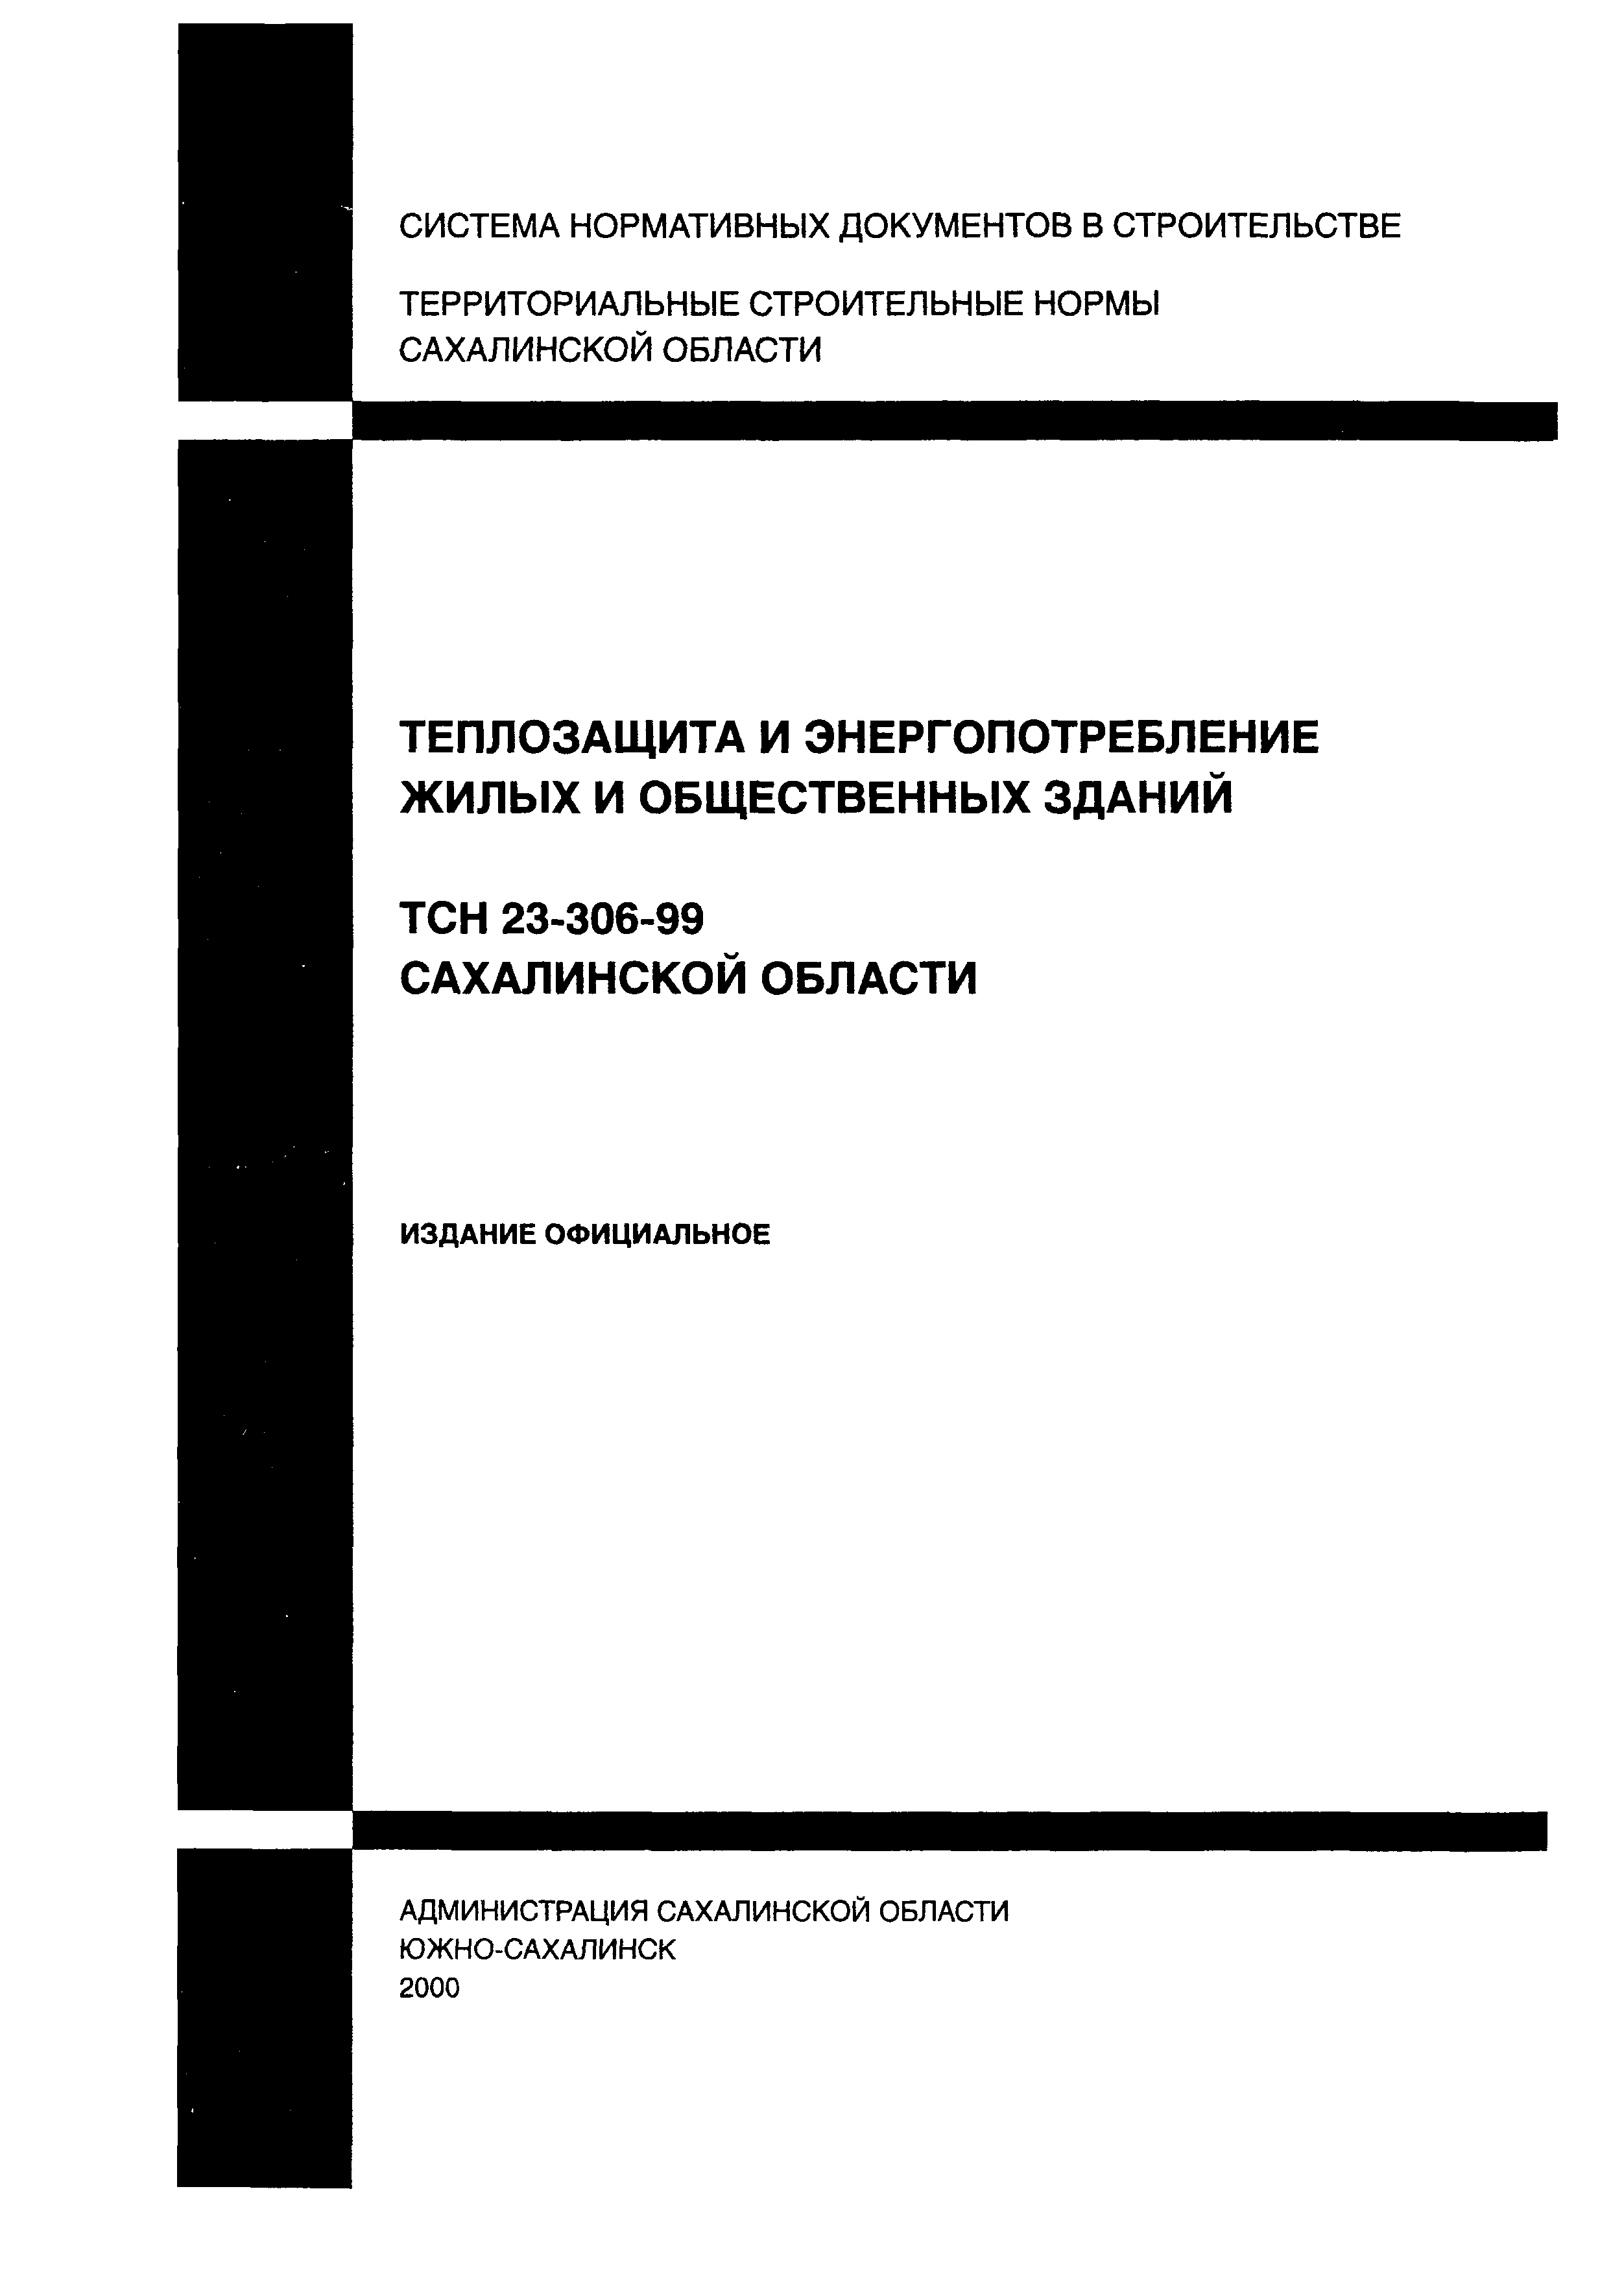 ТСН 23-306-99